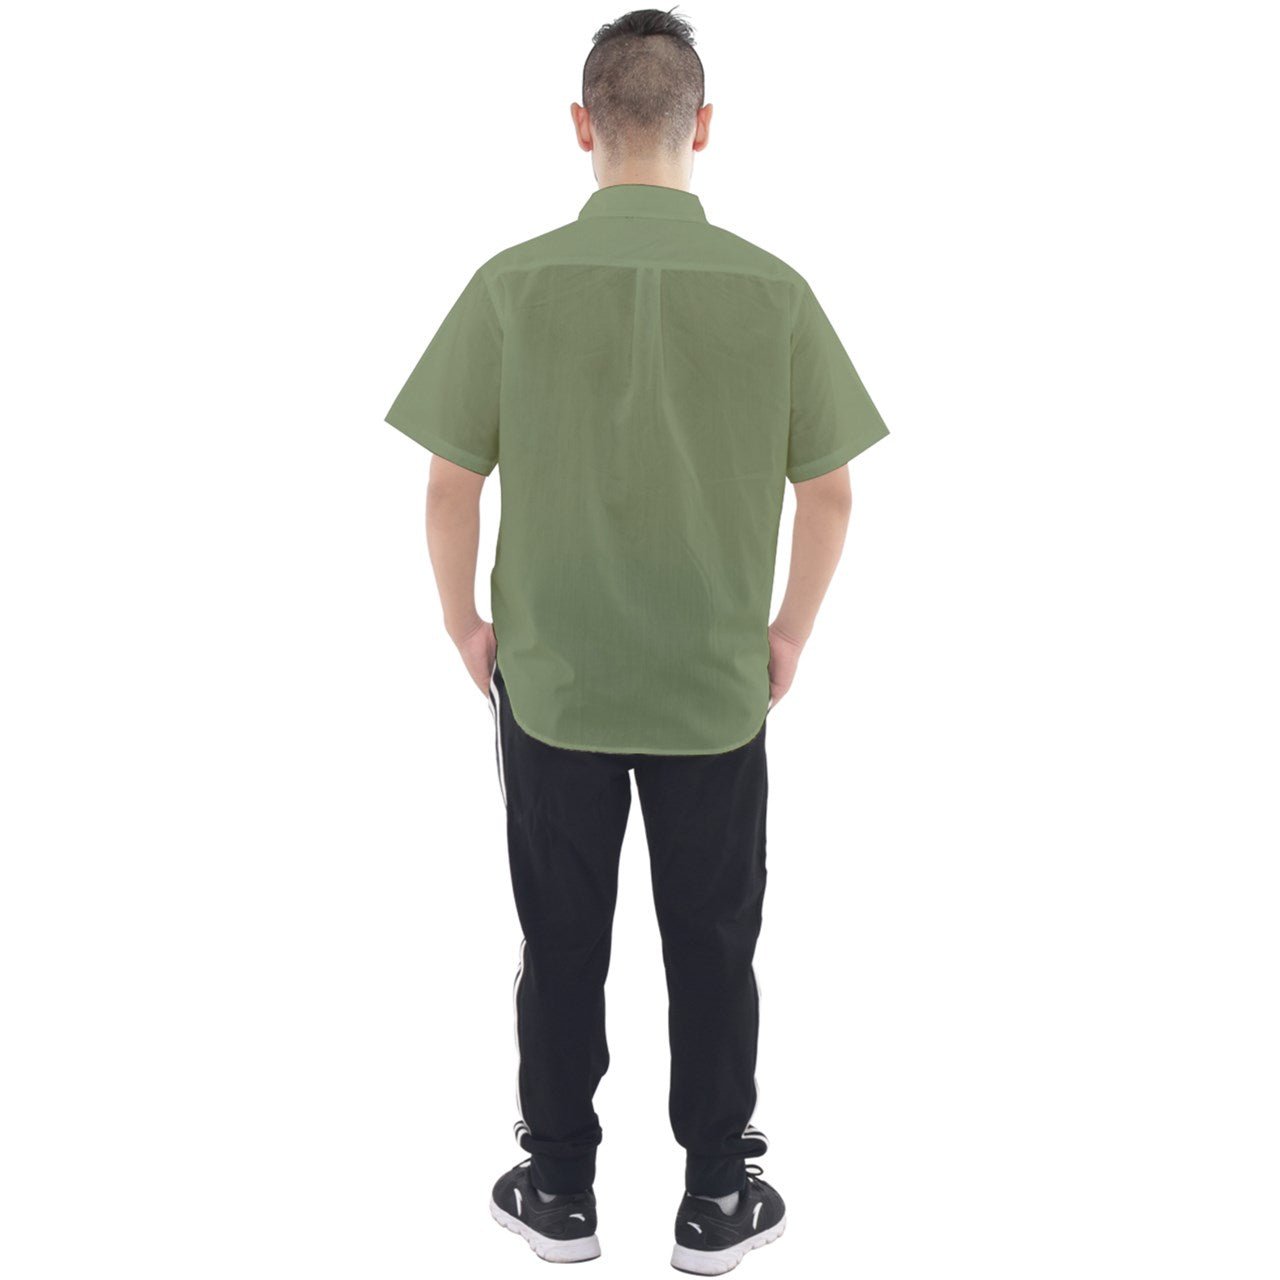 muted green striped Short Sleeve Shirt